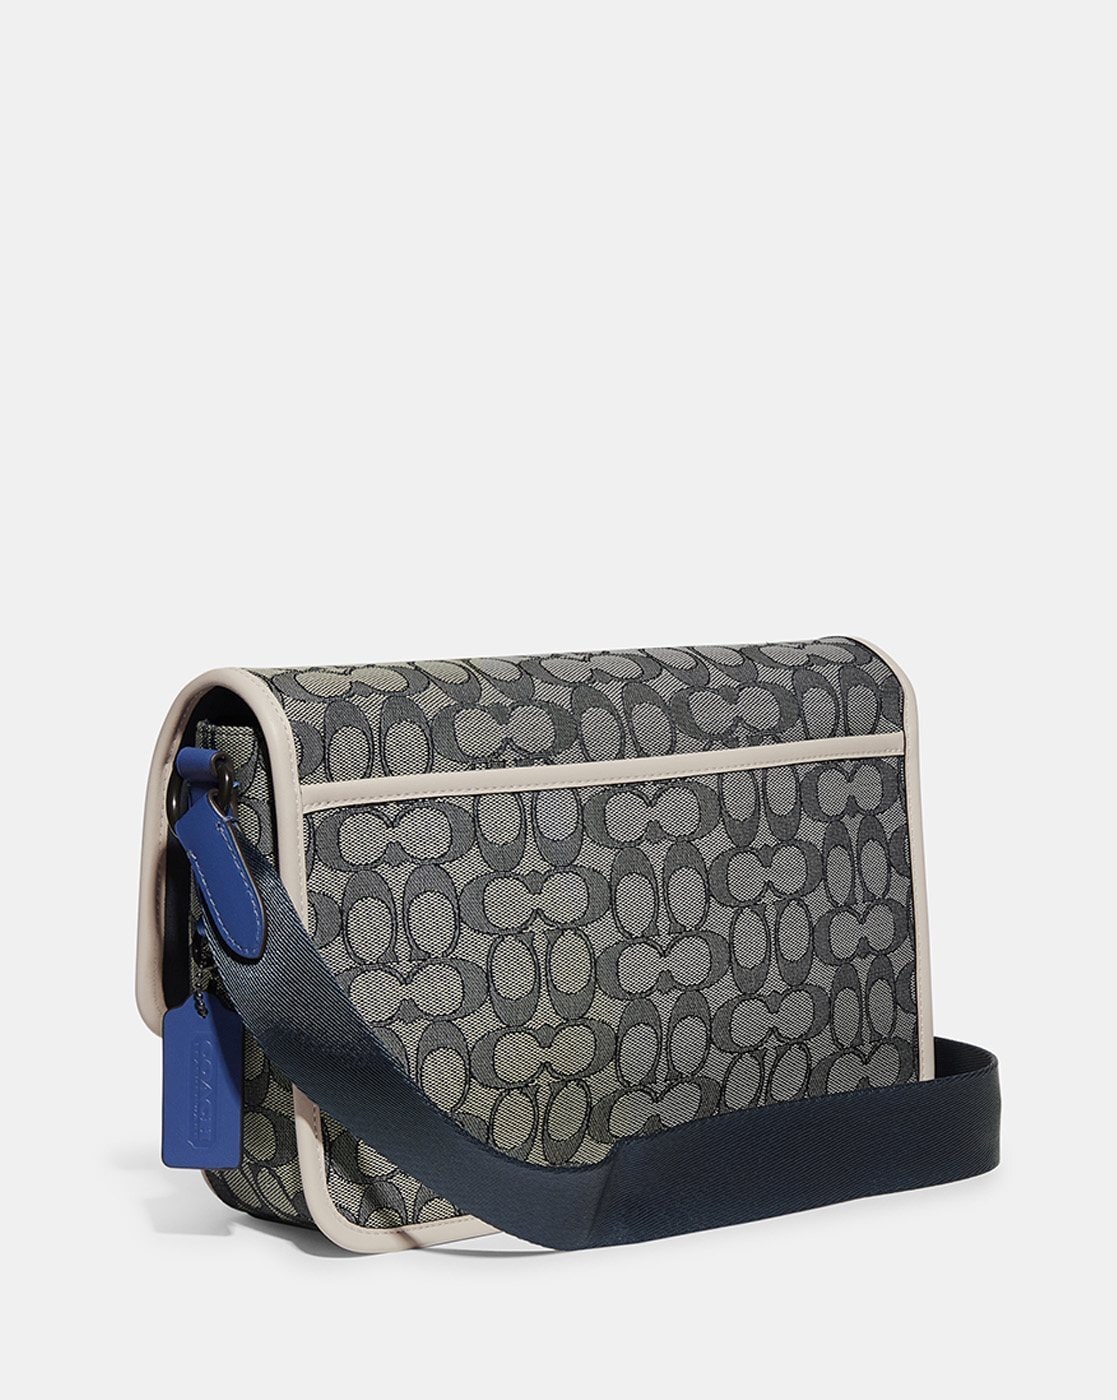 DUPE messenger handbag luxury bag … curated on LTK